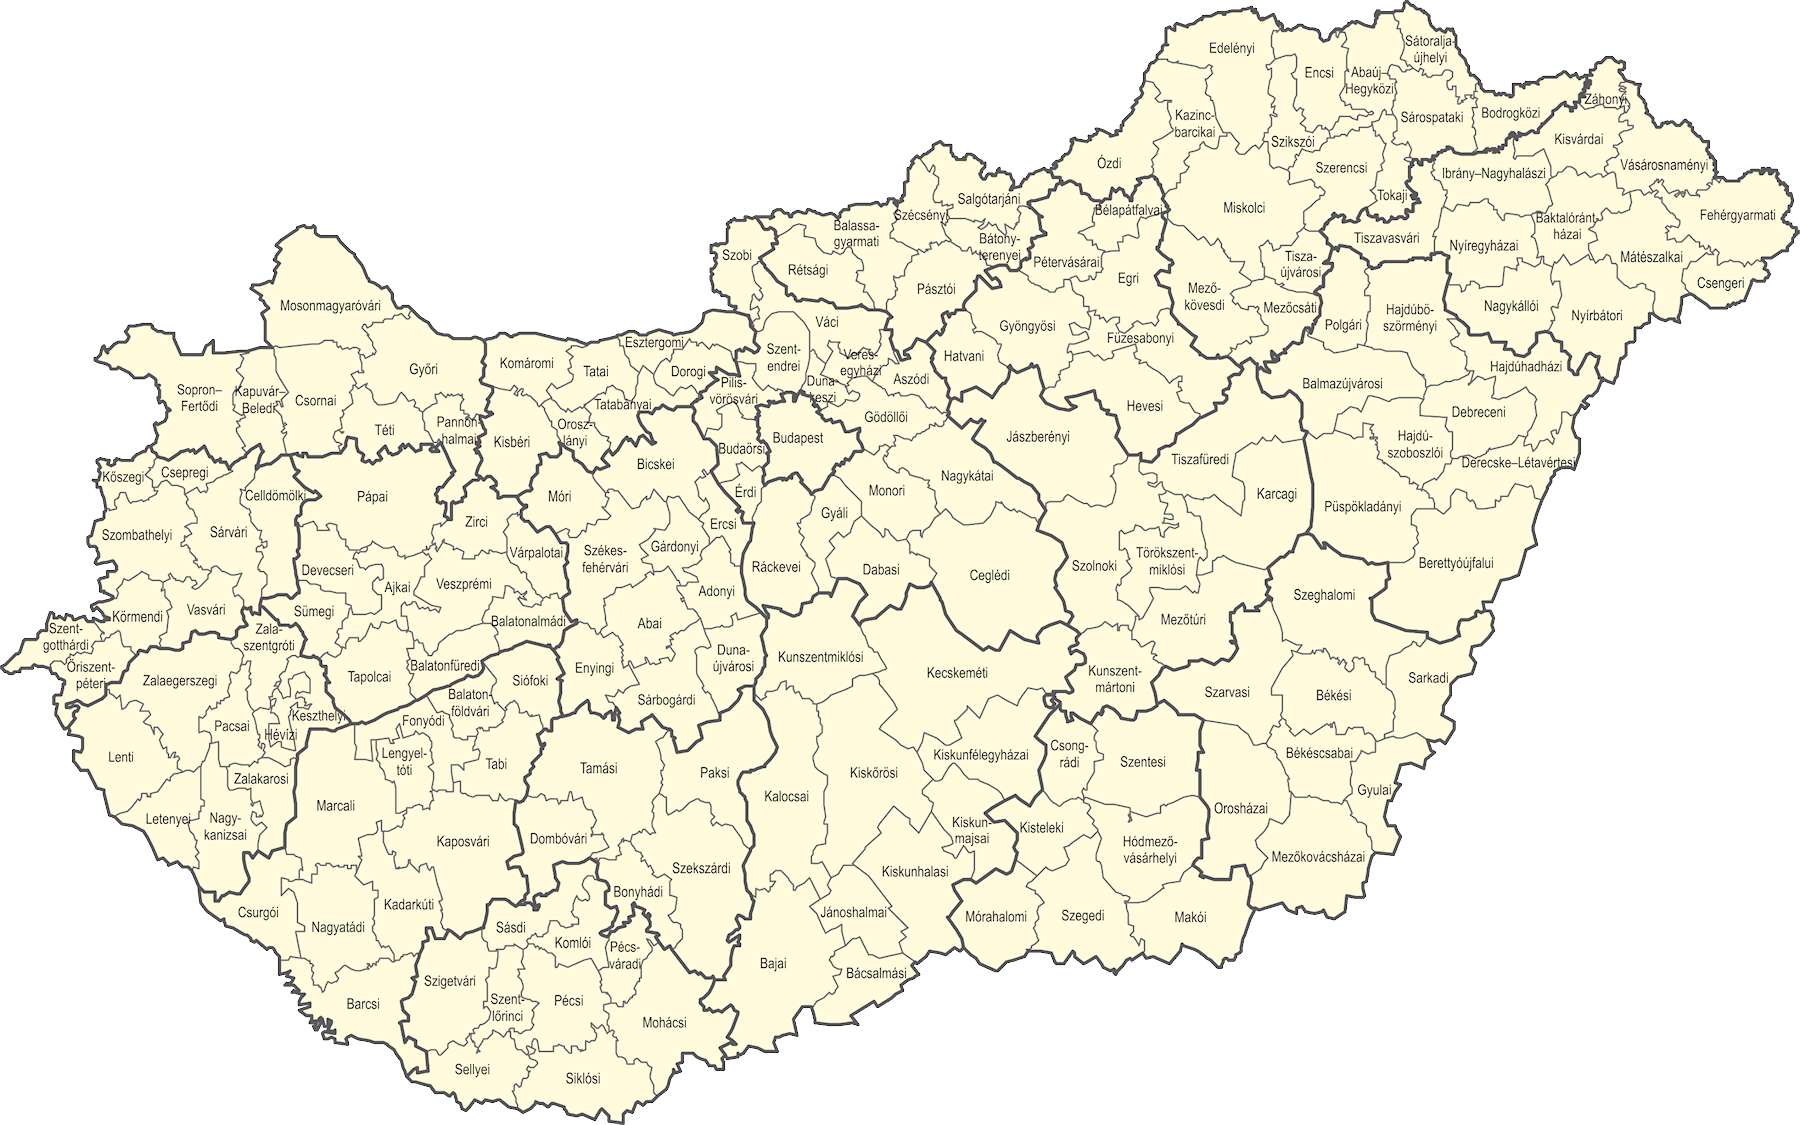 magyarország kistérségei térkép Központi Statisztikai Hivatal magyarország kistérségei térkép